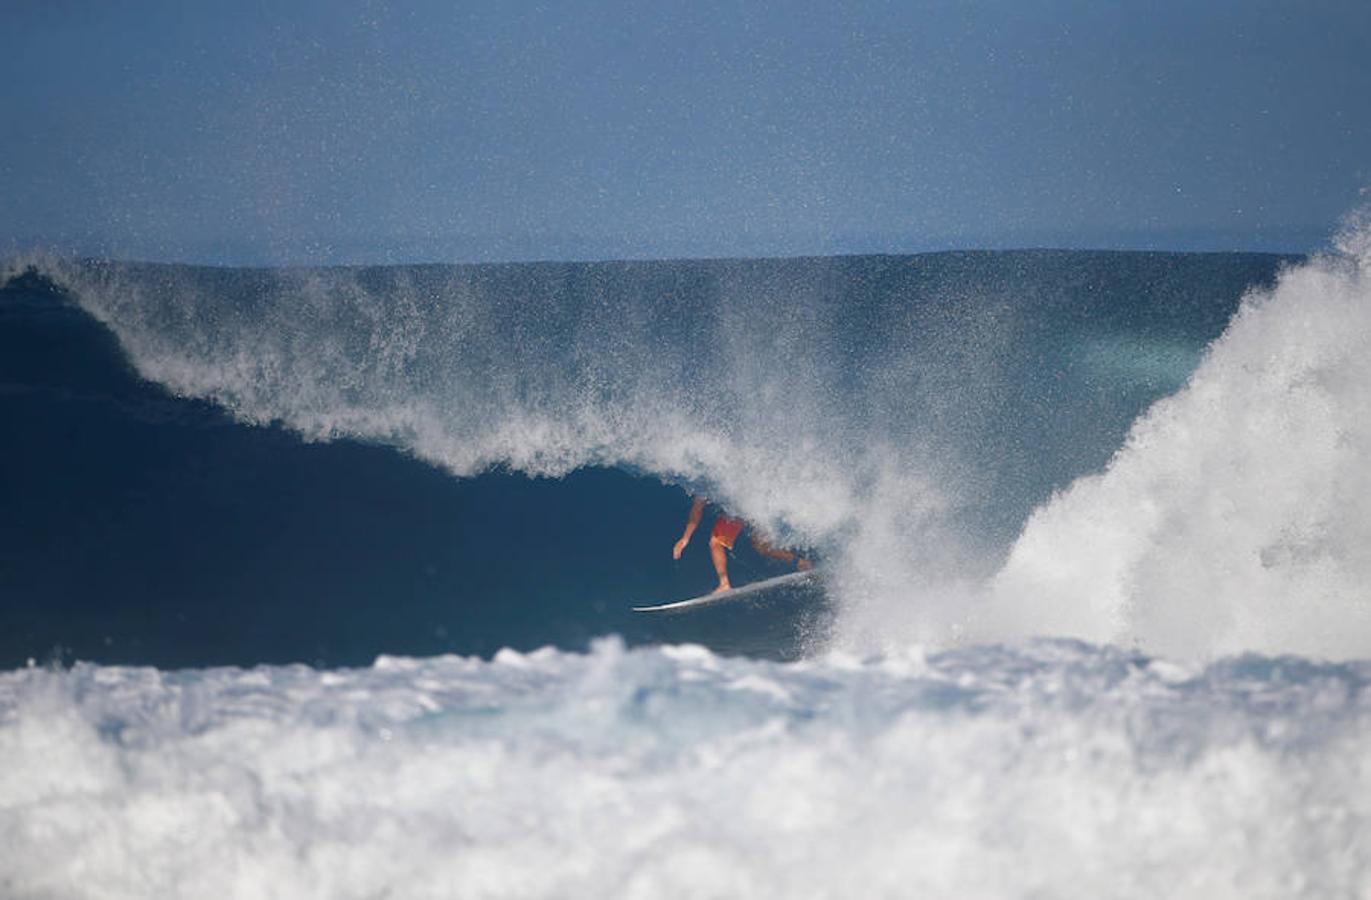 El surfista campeón mundial juvenil Joel Parkinson participa en la Billabong Pipe Masters en la isla de Oahu, Hawaii.